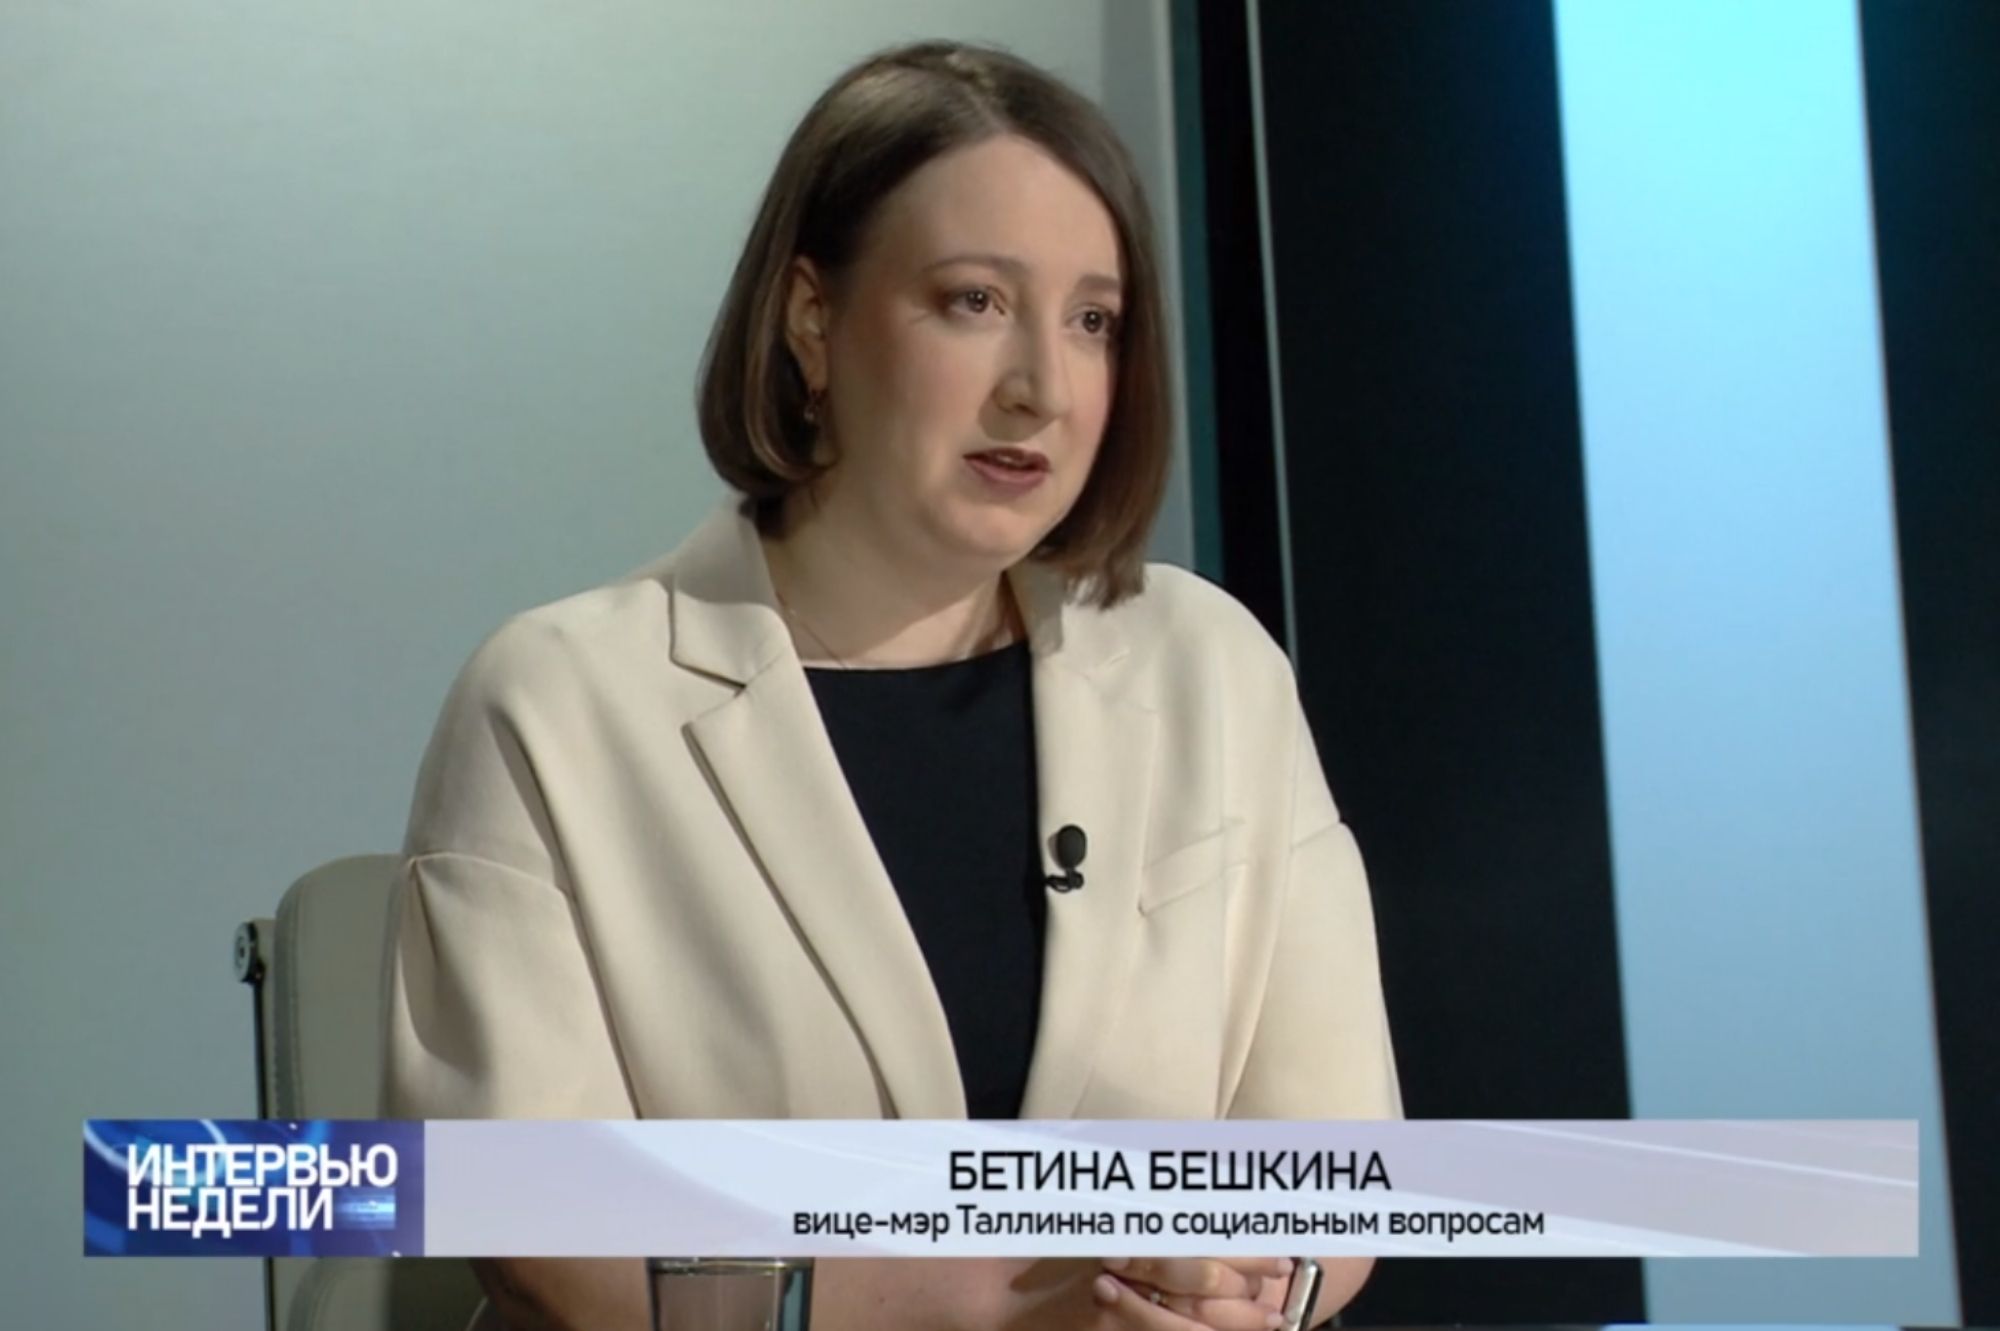 Вице-мэр Таллинна Бетина Бешкина: Вопрос с долгосрочным проживанием беженцев необходимо решать быстро. Источник фото: скриншот с видео ERR.